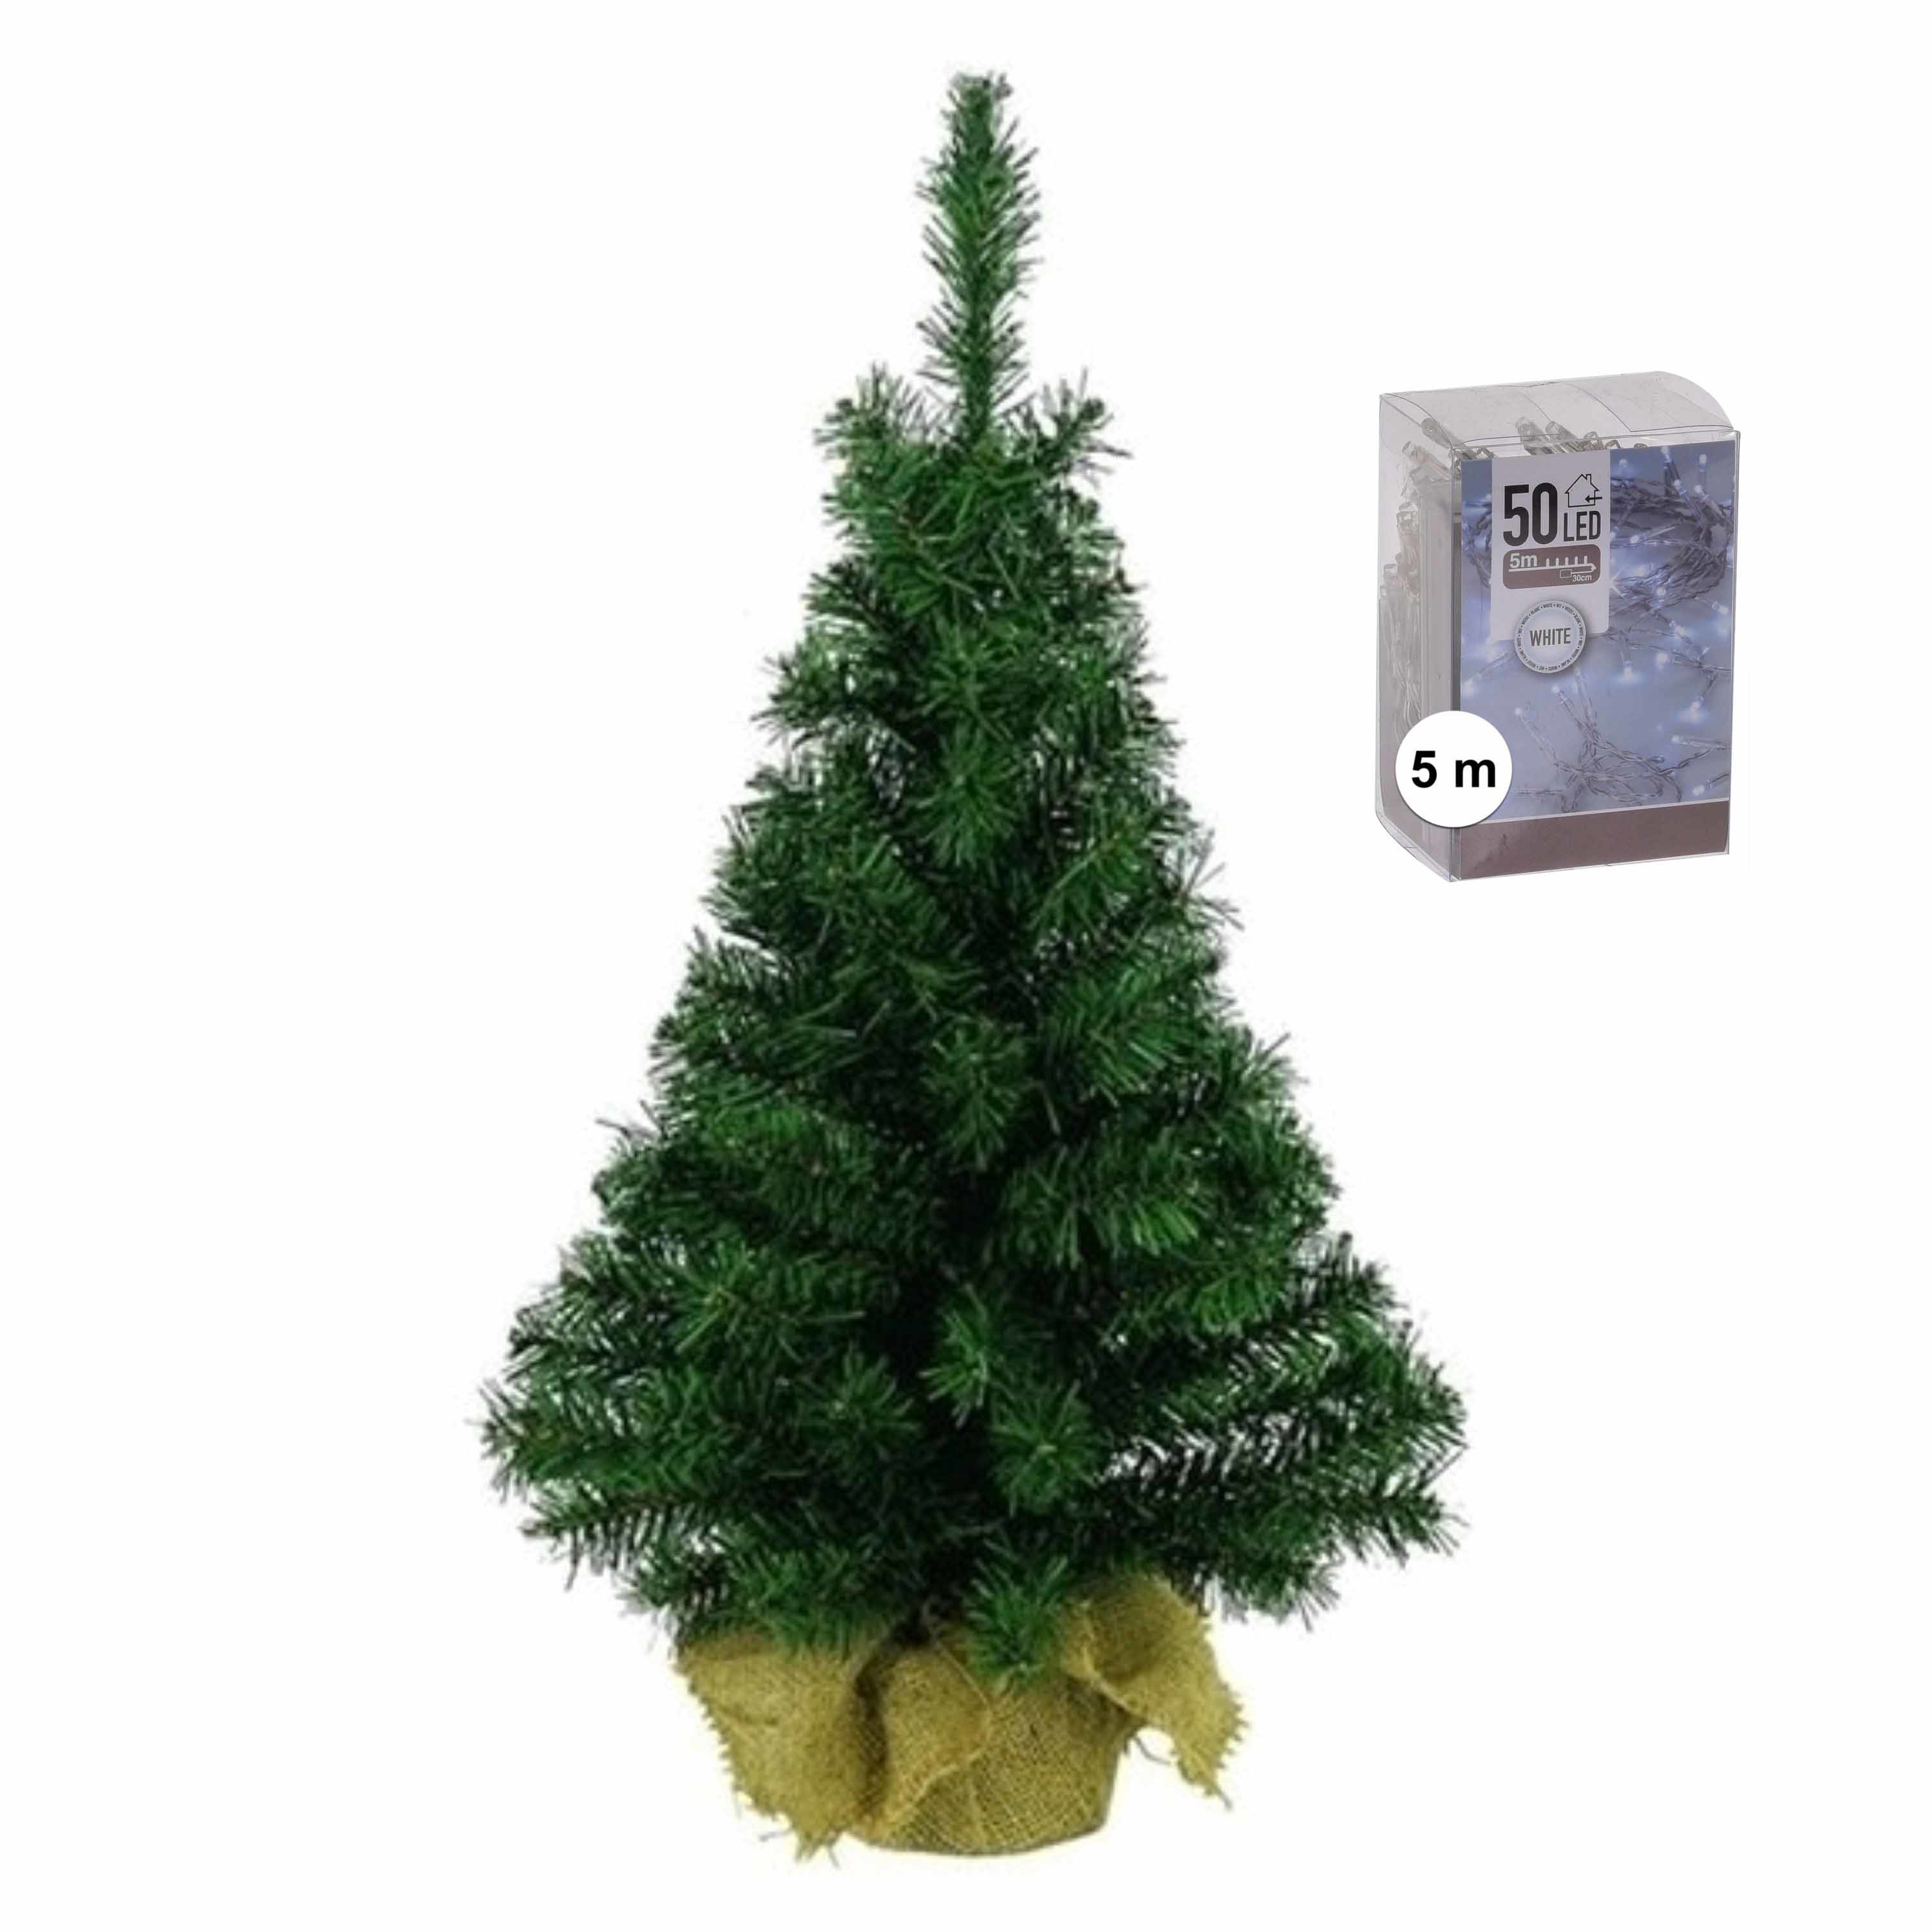 Volle mini kerstboom-kunstboom groen 45 cm inclusief helder witte kerstverlichting